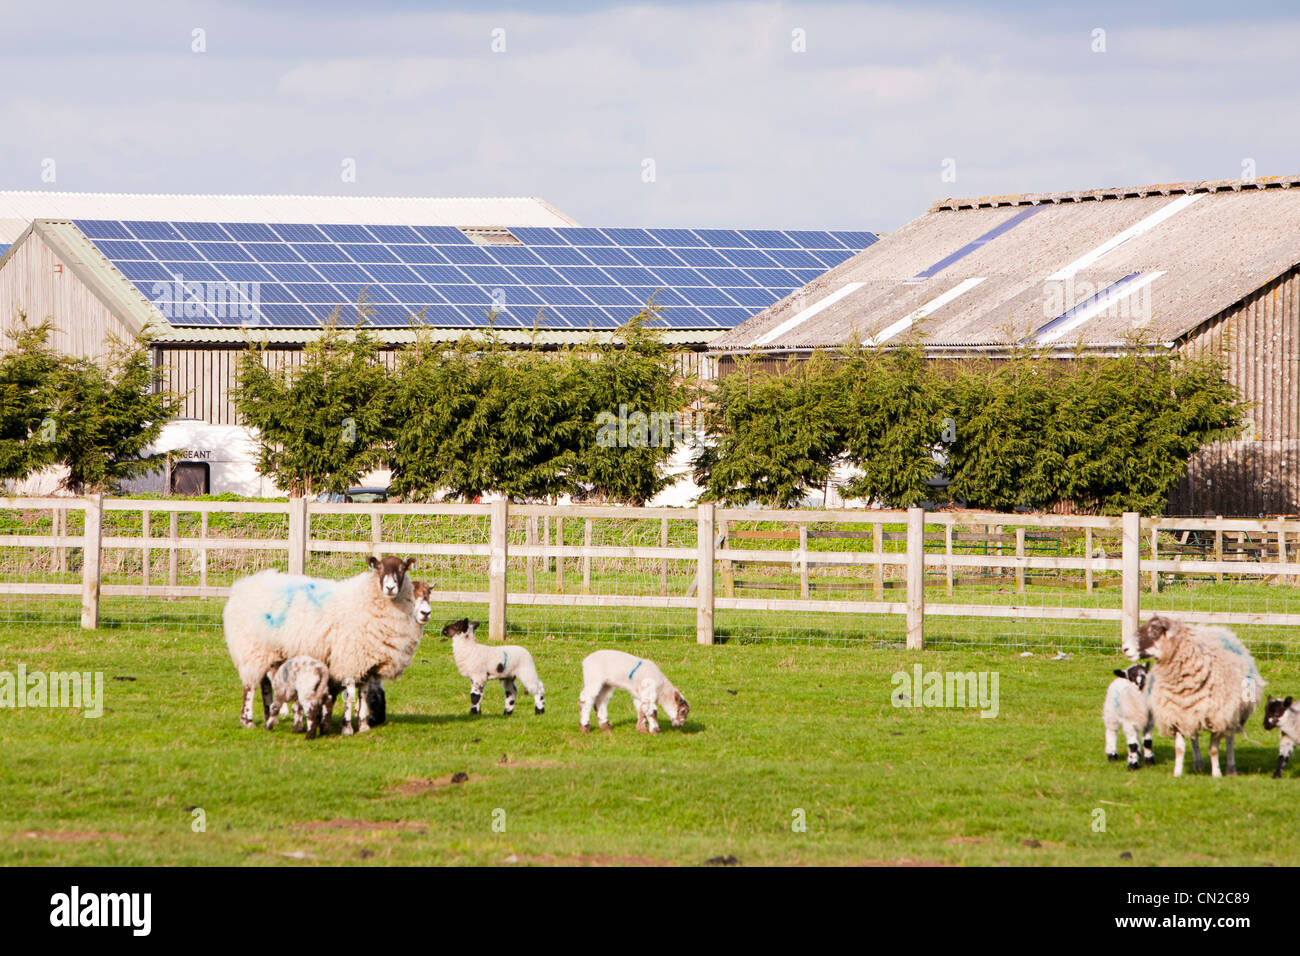 Un panneau solaire de 35 Kw système sur un toit de grange sur une ferme dans le Leicestershire, UK avec des moutons et agneaux dans l'avant-plan. Banque D'Images